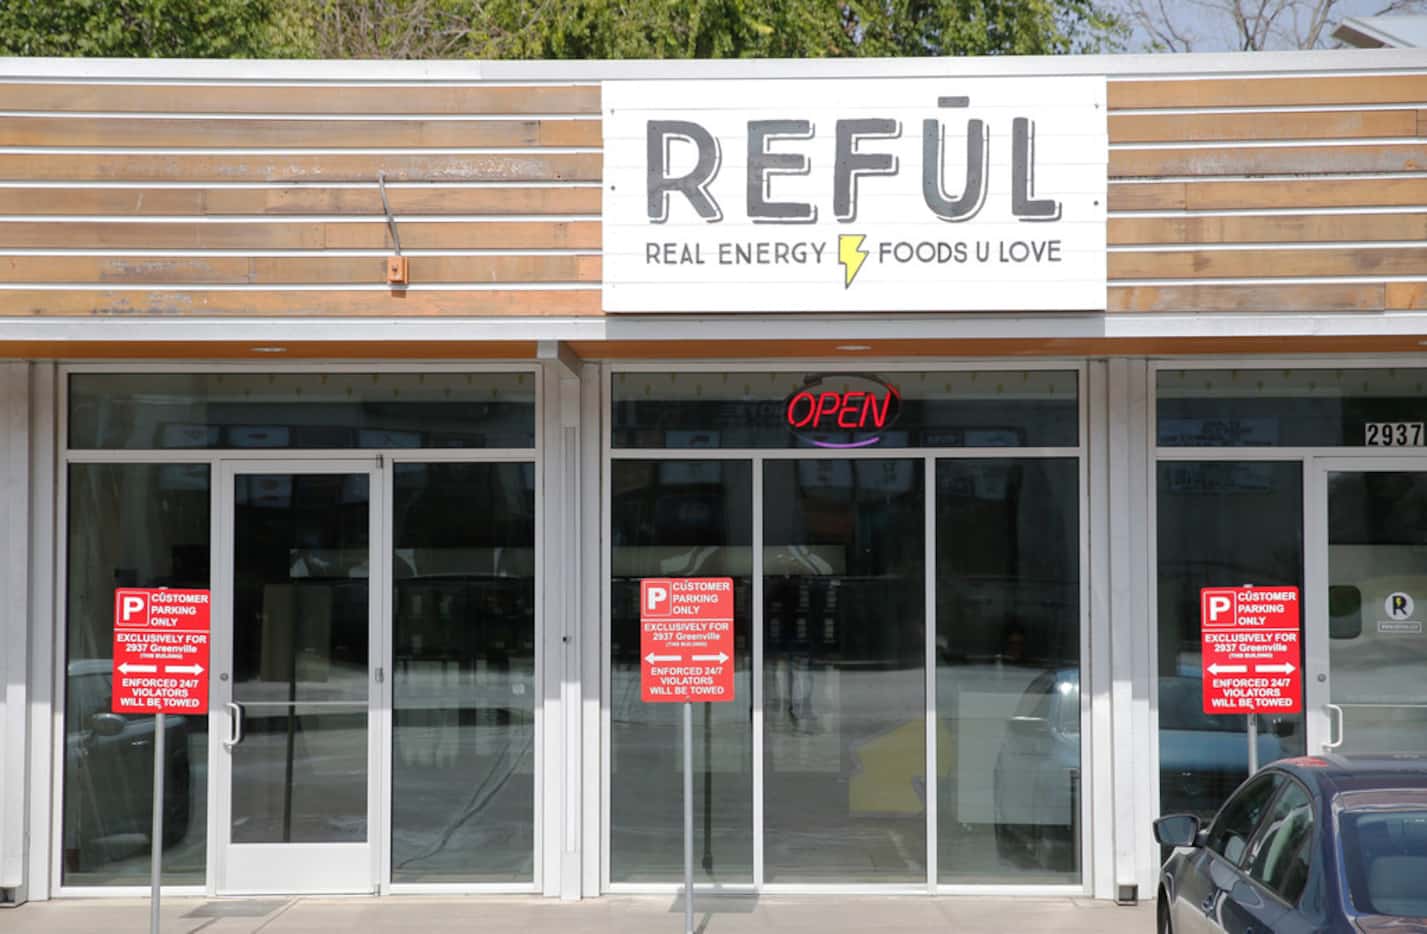 Reful (Real Energy Foods U Love) in Dallas 